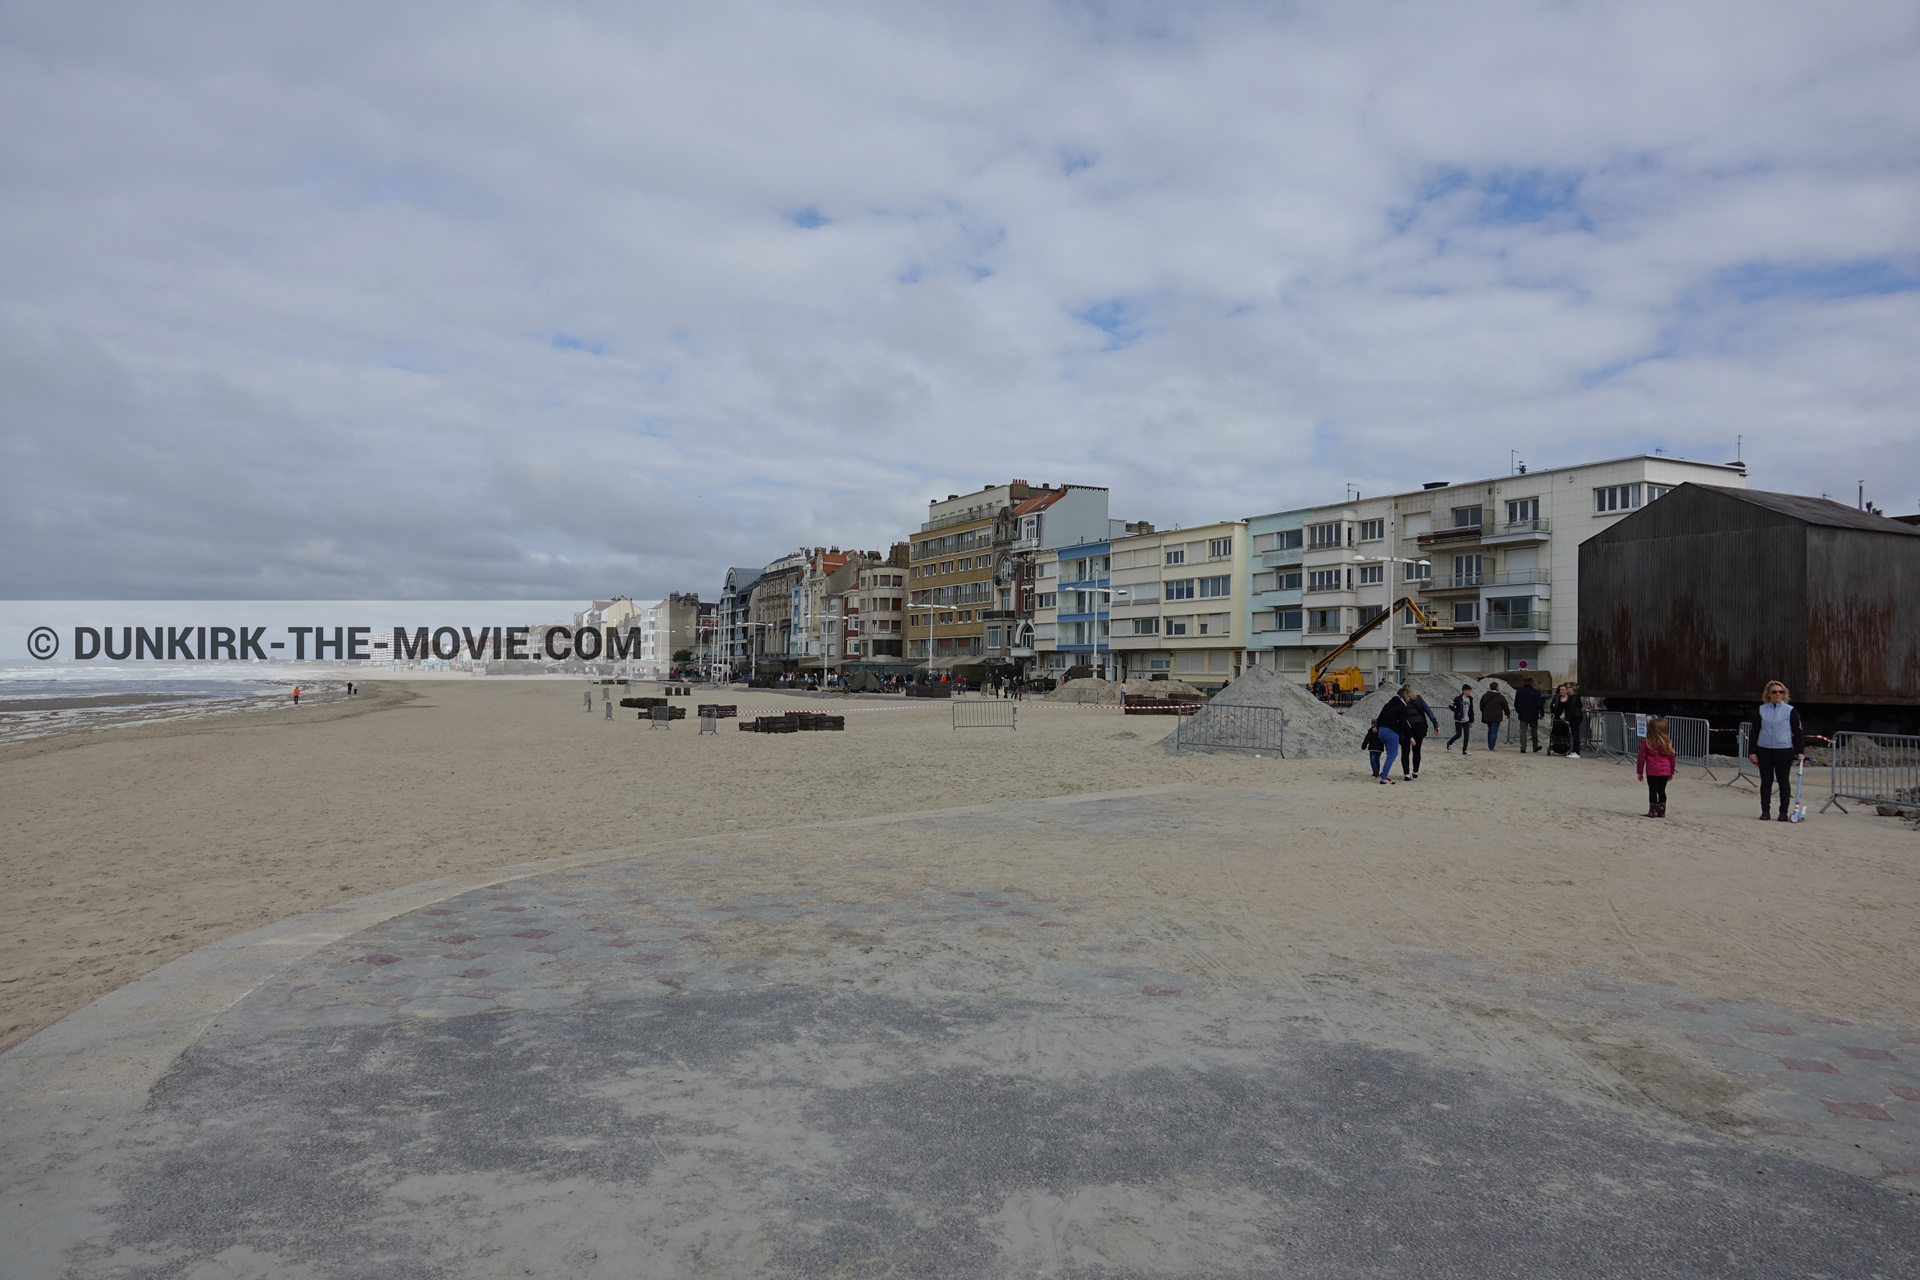 Fotos con cielo nublado, decoración, Malo les Bains, playa,  durante el rodaje de la película Dunkerque de Nolan